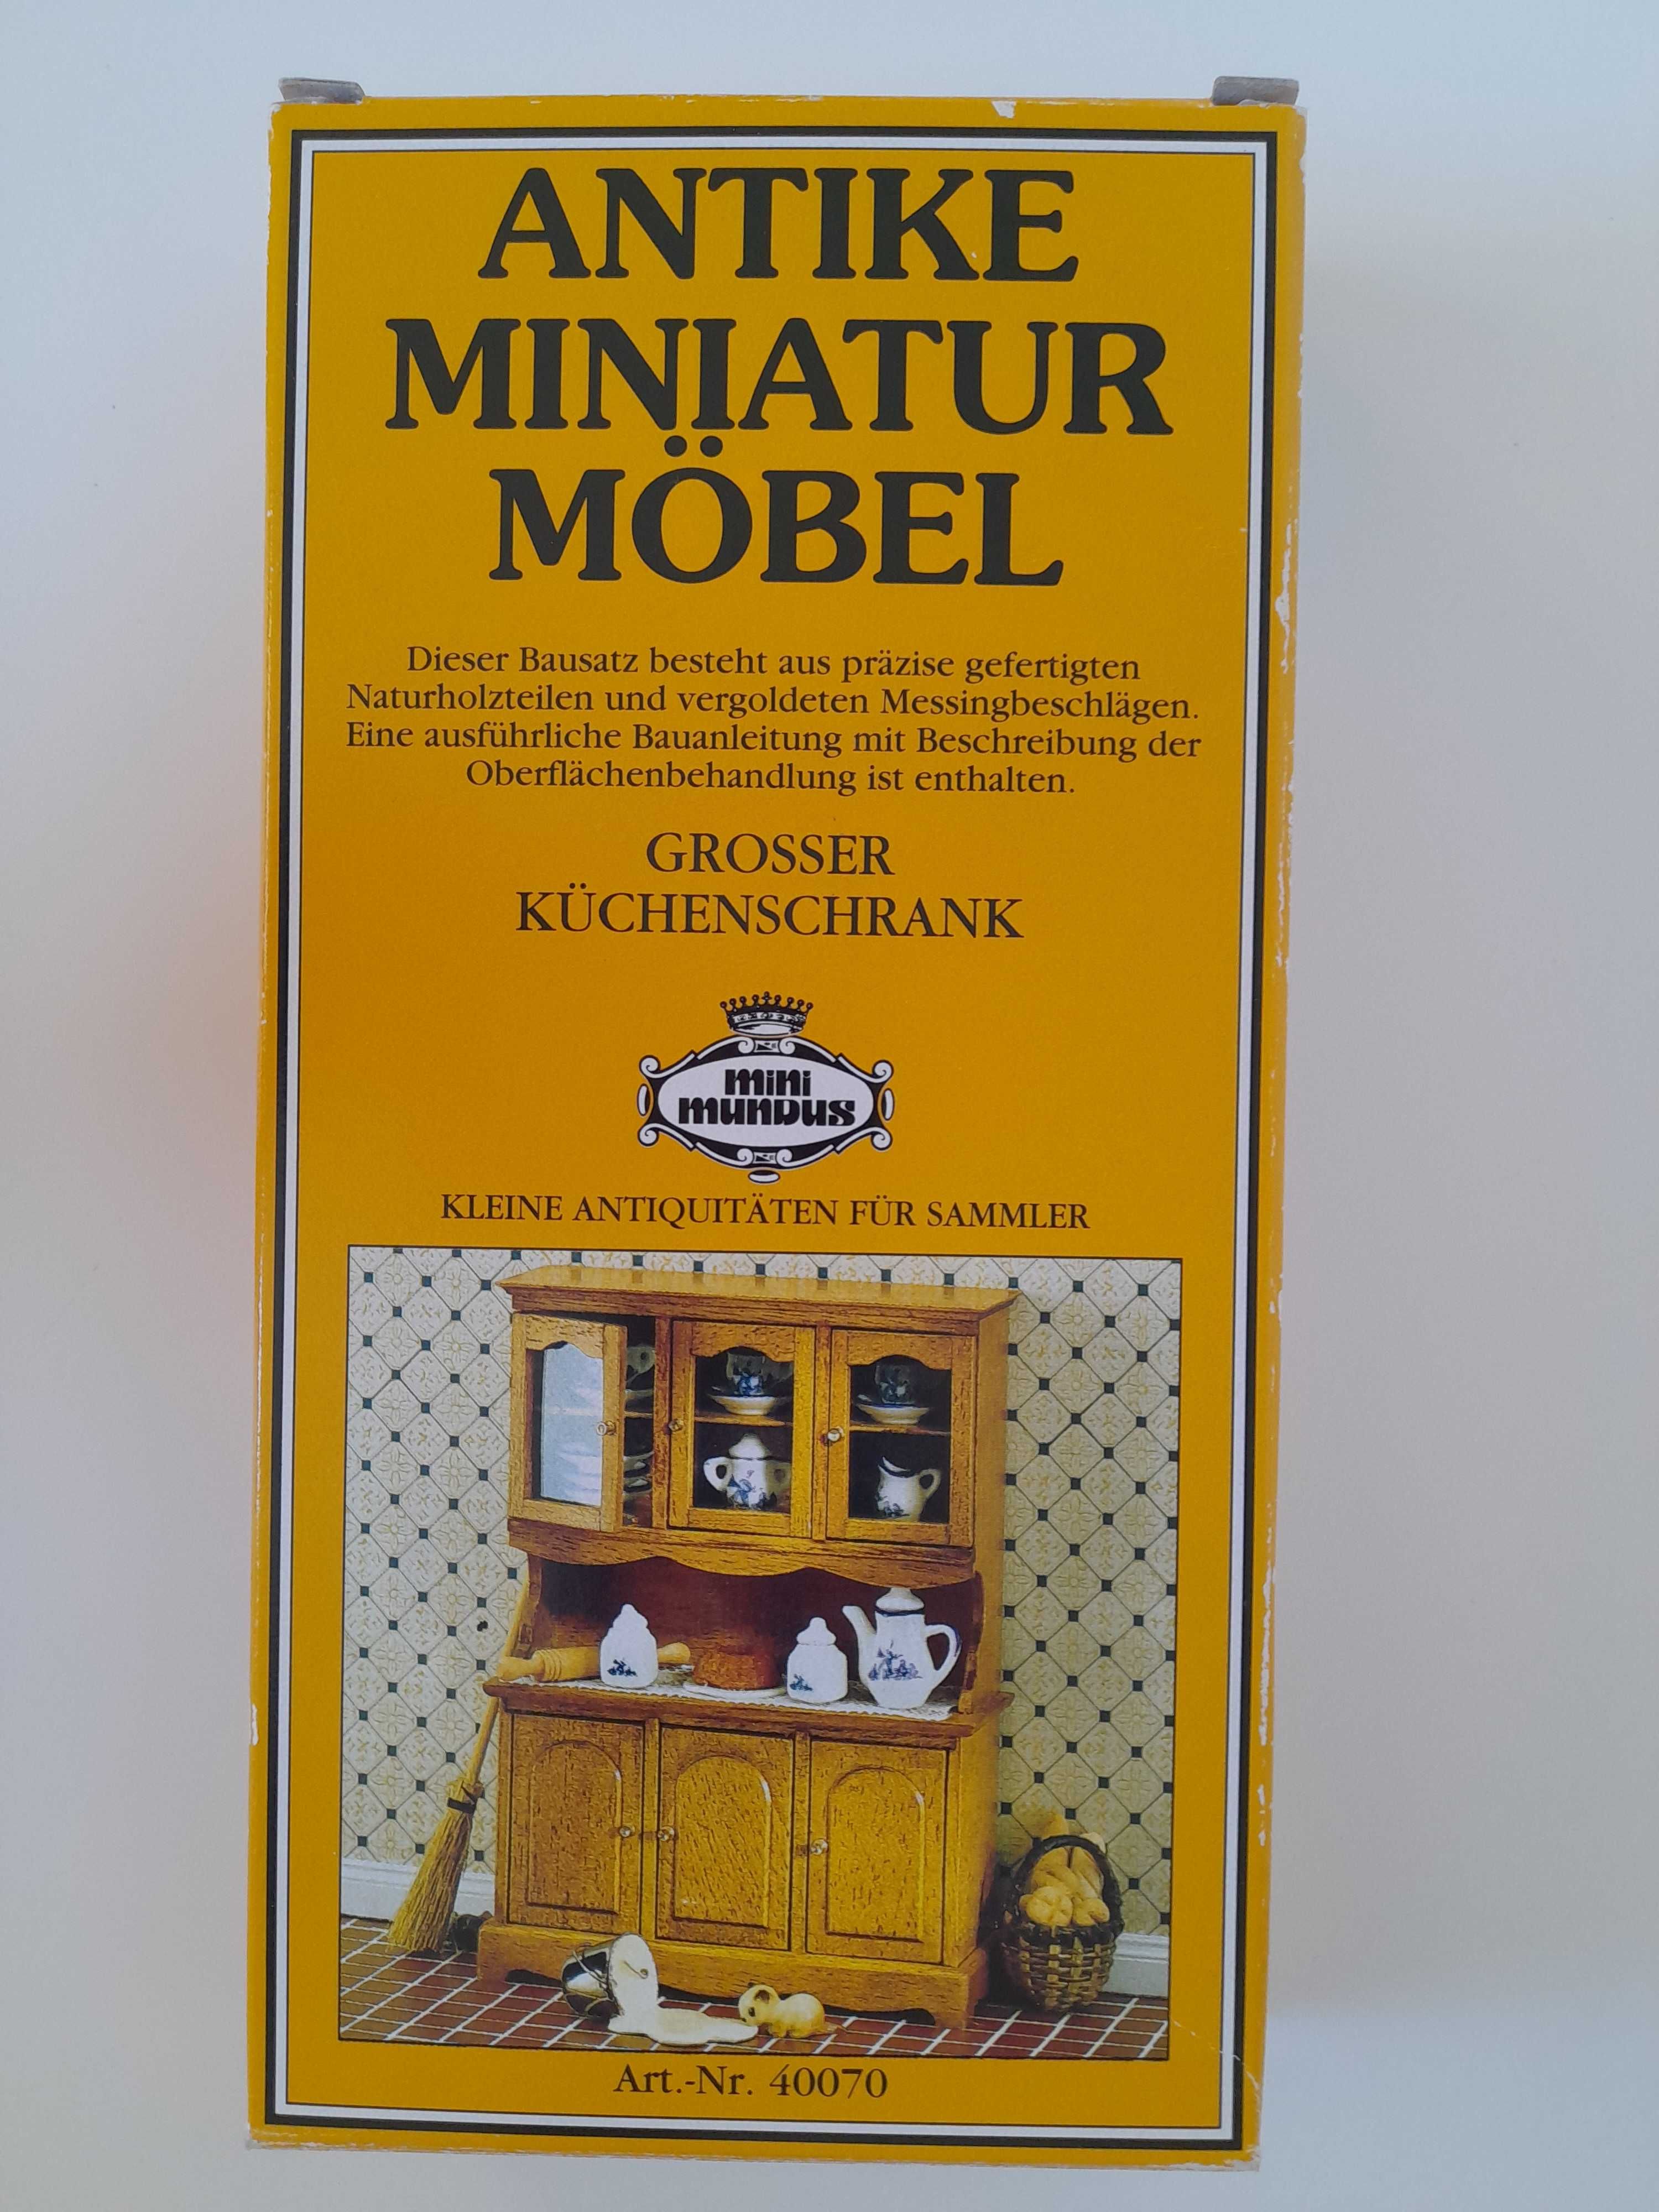 Stylowy miniaturowy kredens 1:12 domek lalek Mini Mundus 40070